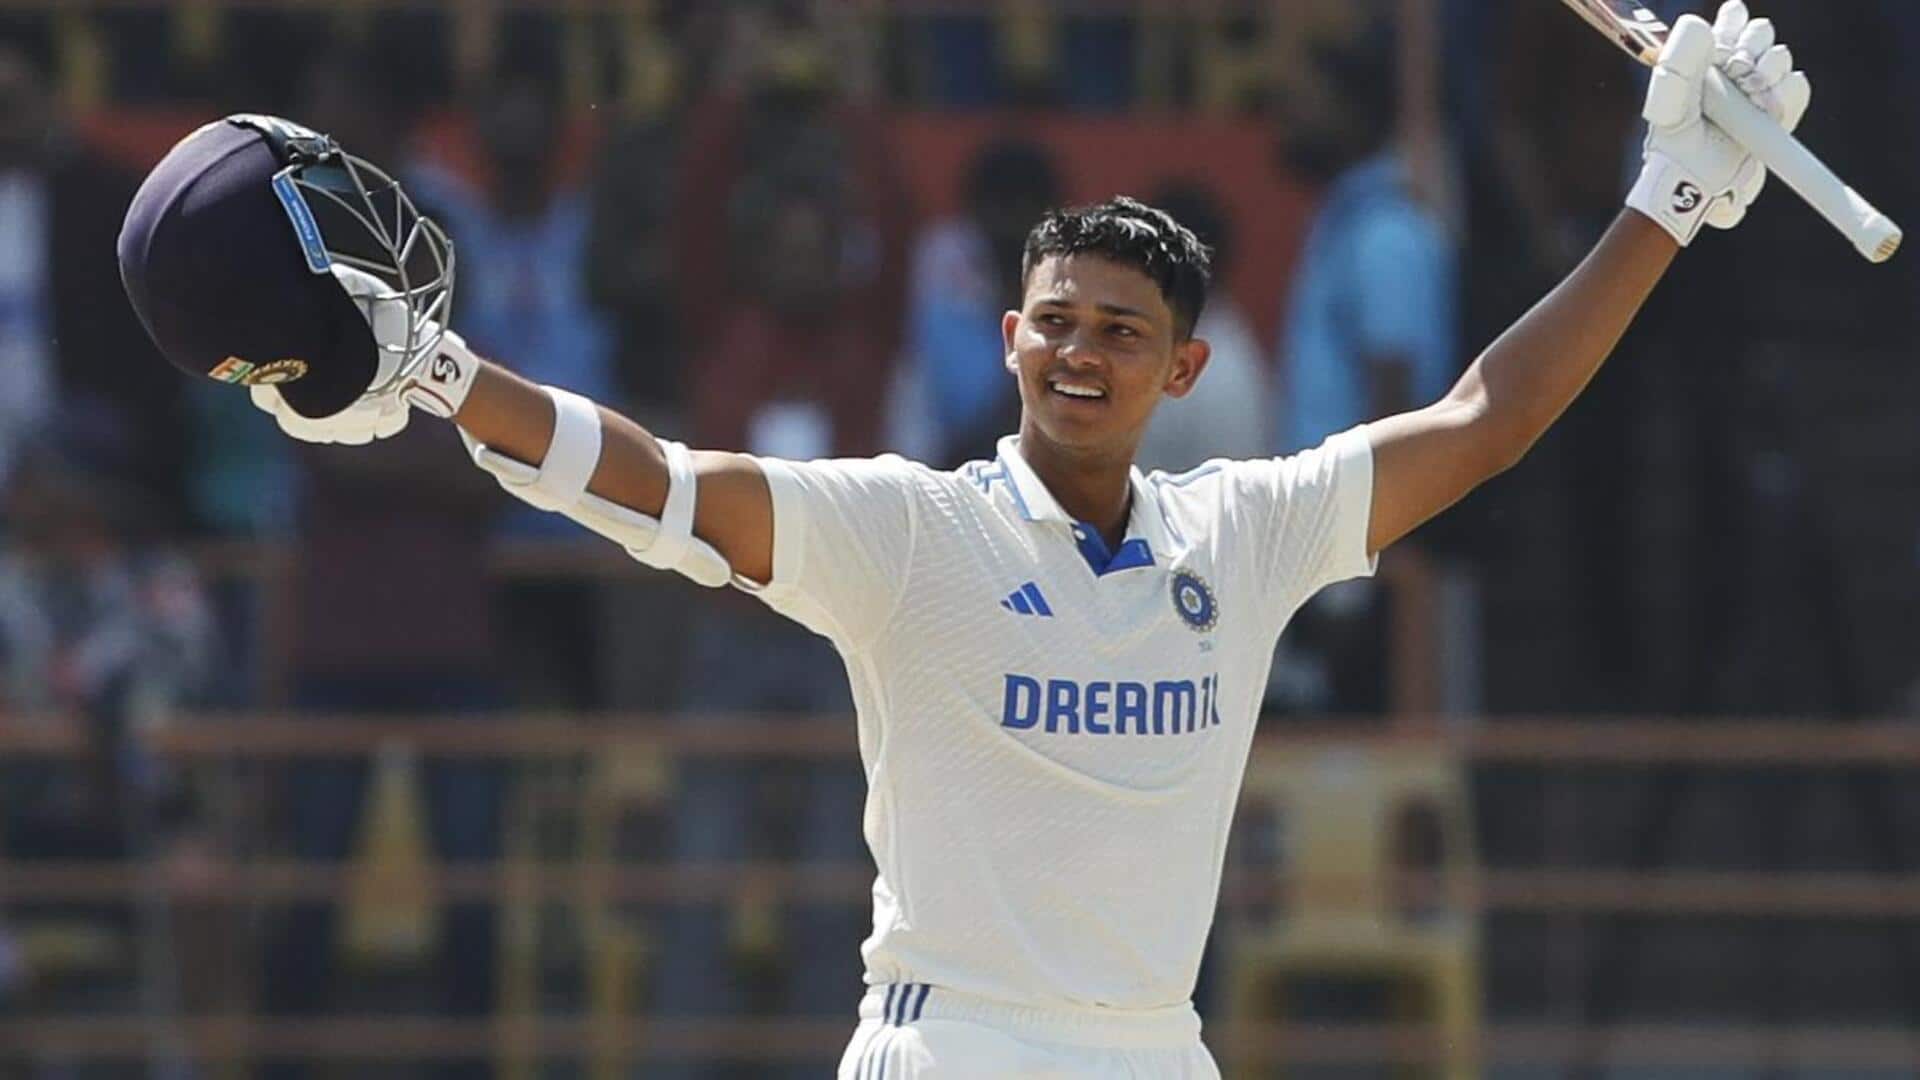 यशस्वी जायसवाल पहले 8 टेस्ट में सर्वाधिक रन बनाने वाले भारतीय बने, गावस्कर को पछाड़ा